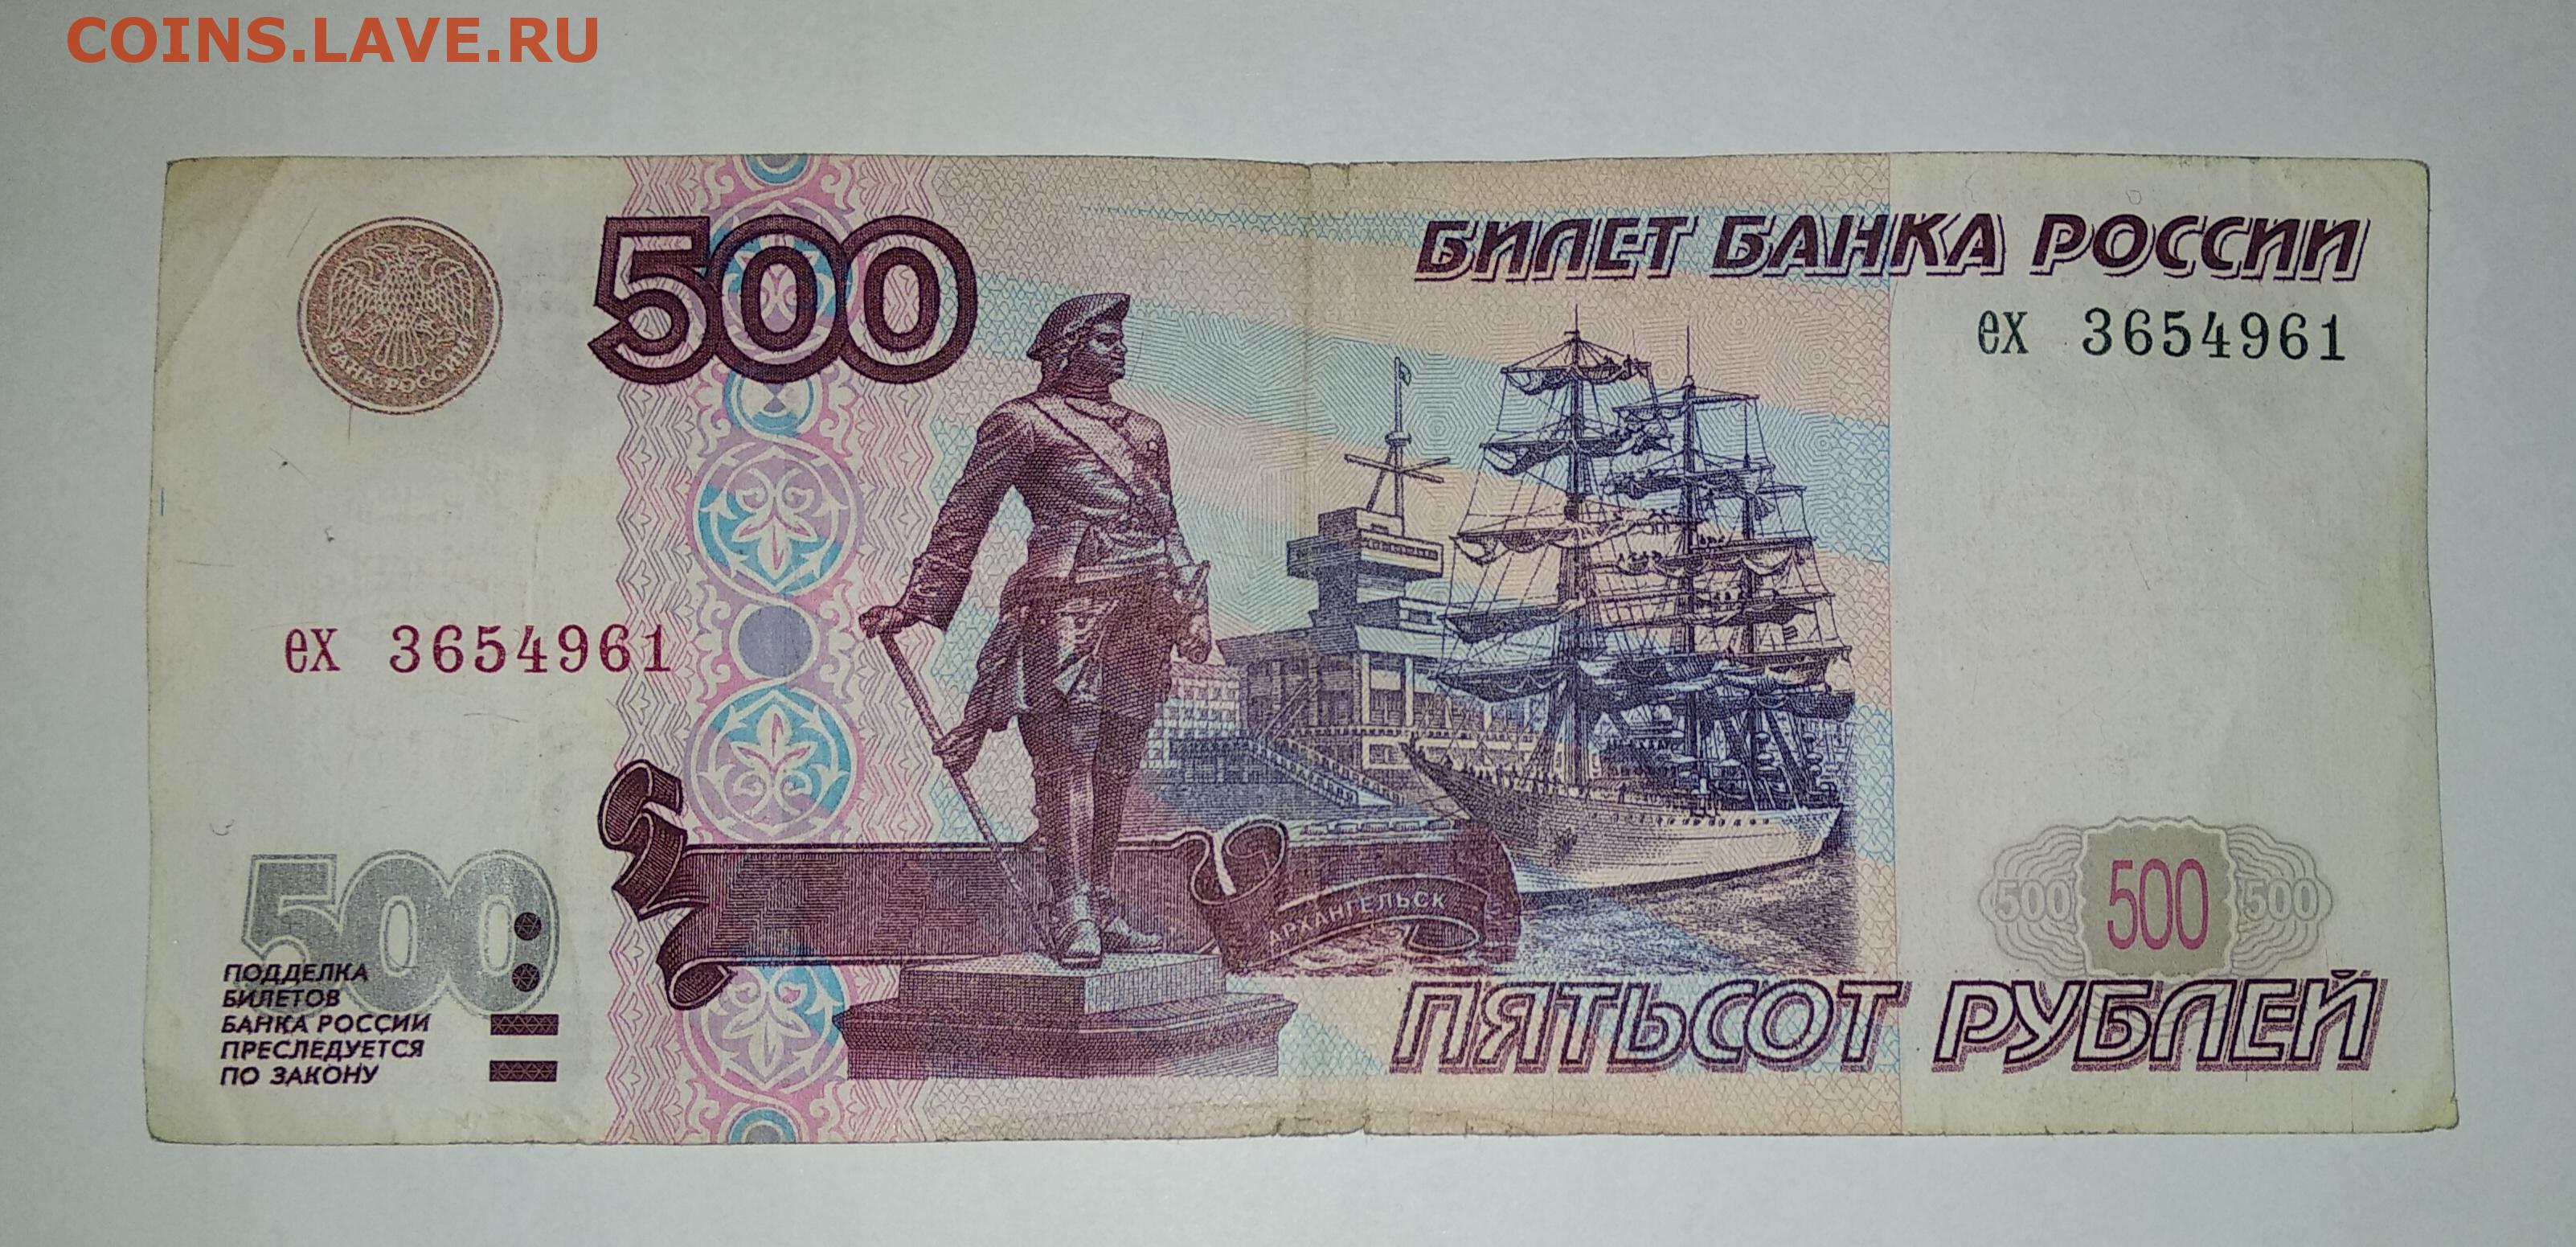 Бизнес 500 рублей. Купюра 500 рублей. 500 Рублей 1997. 500 Рублей 1997г. Купюра 500 рублей с корабликом.